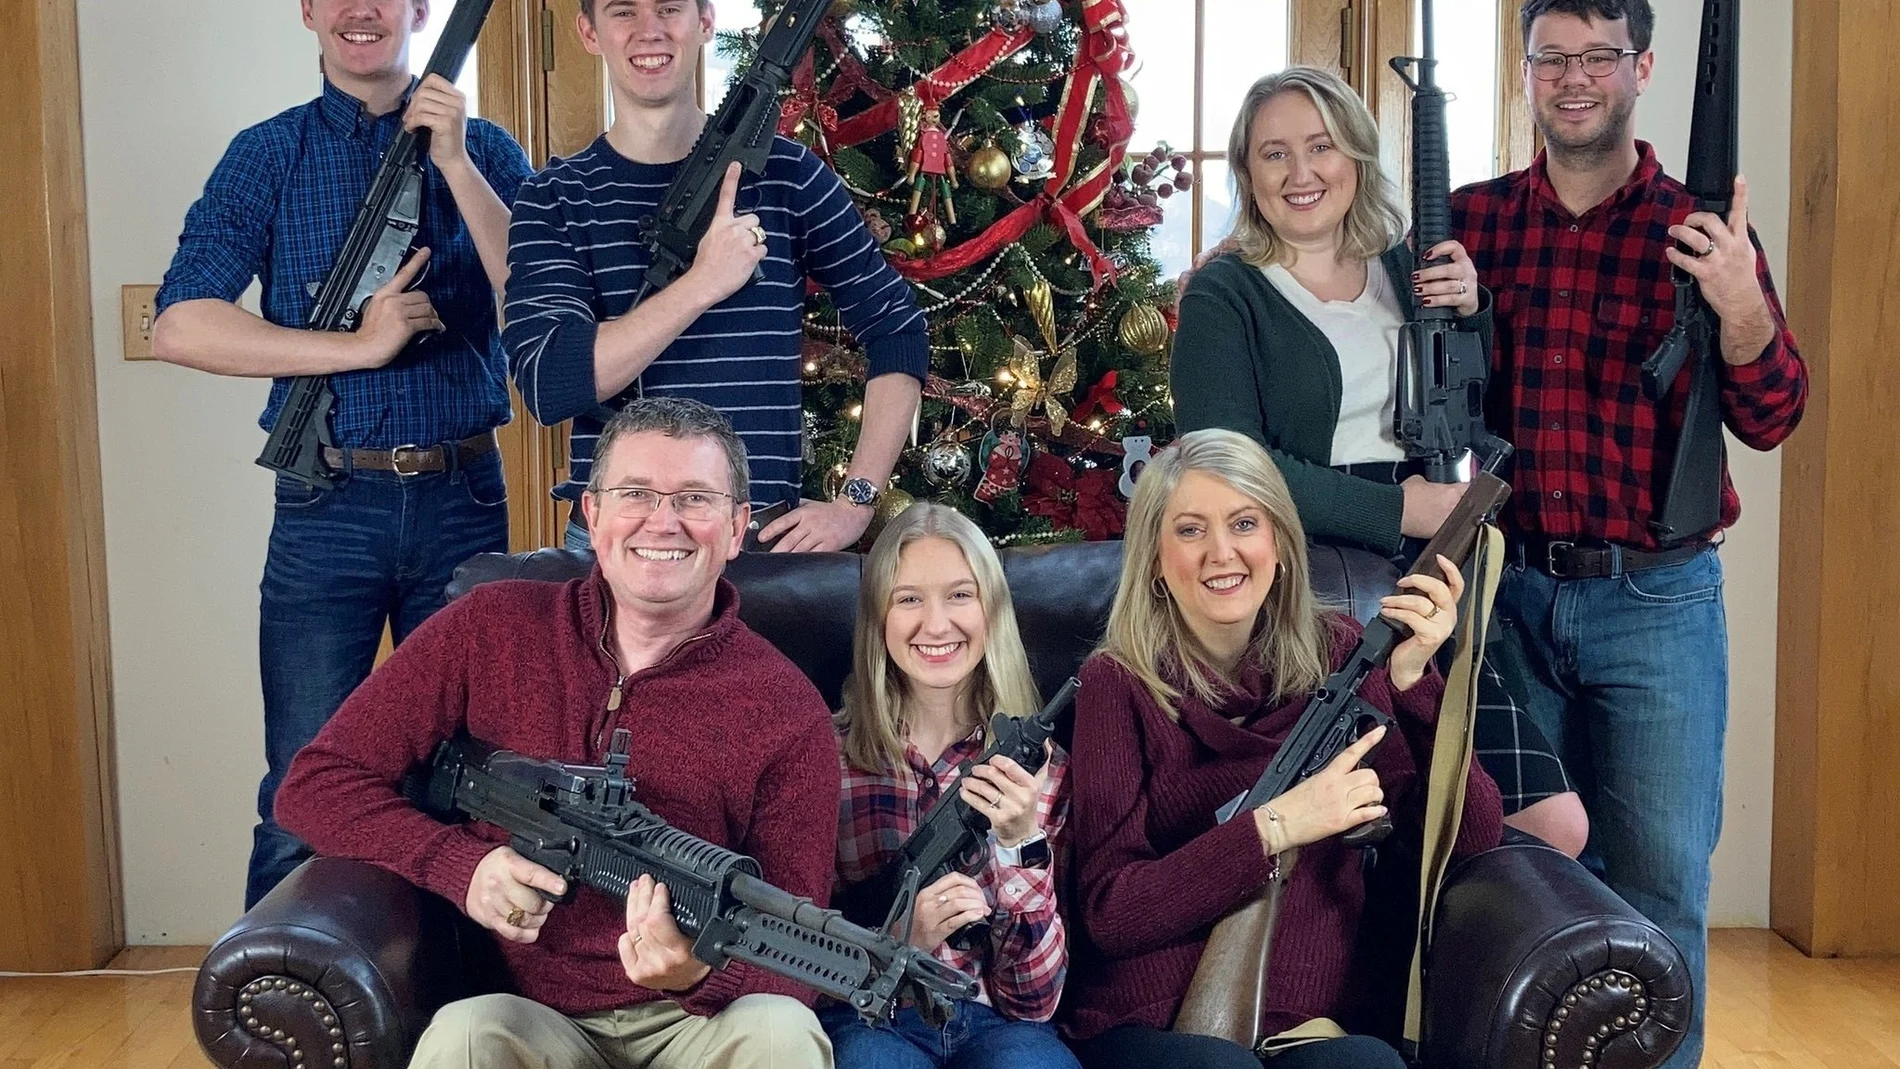 El polémico congresista, Thomas Massie, junto a su familia y su particular Navidad